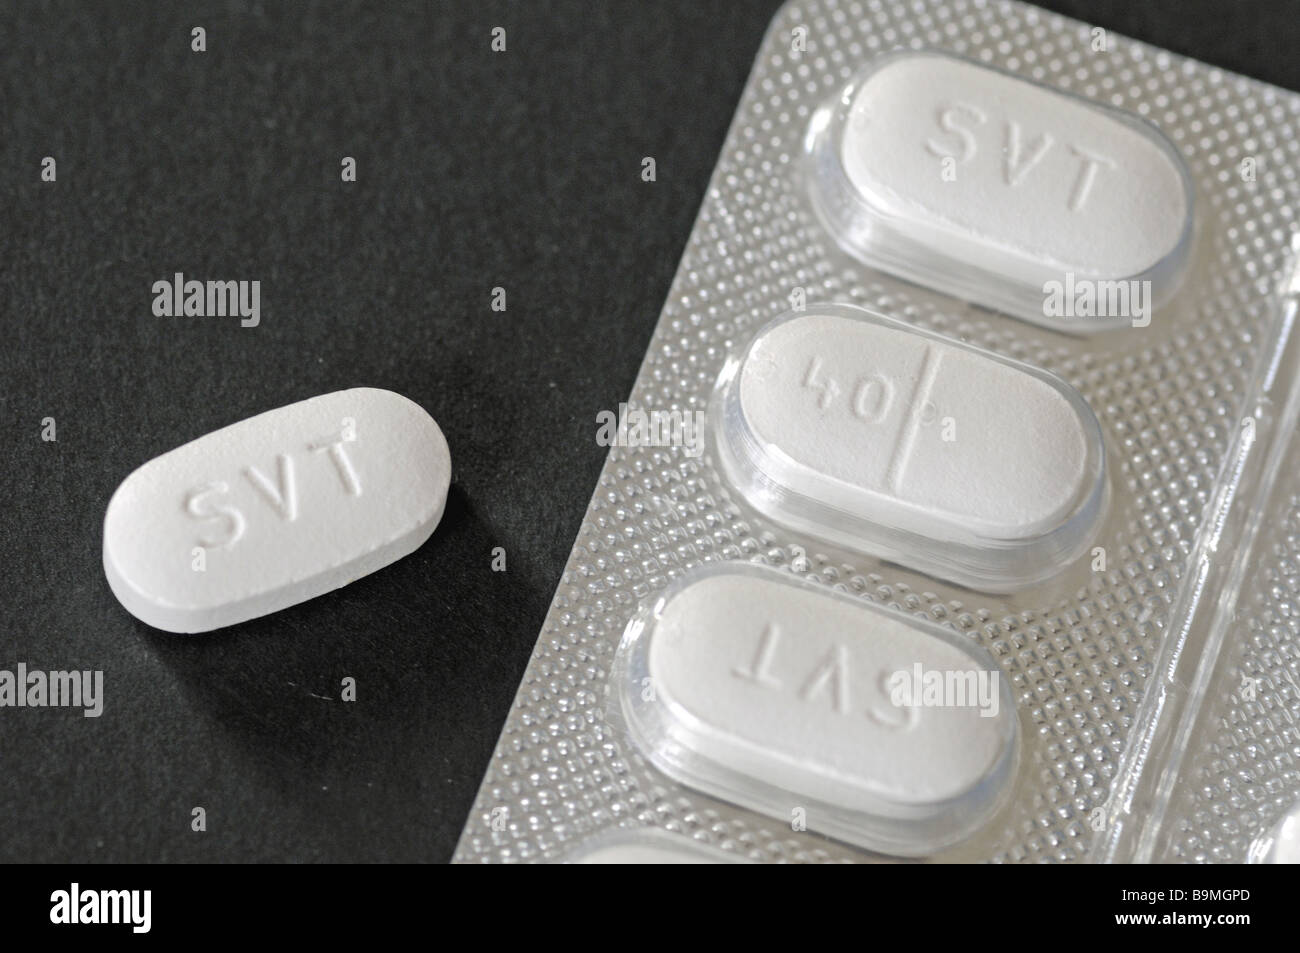 Simvastatin tablets in foil blister pack on black background Stock Photo